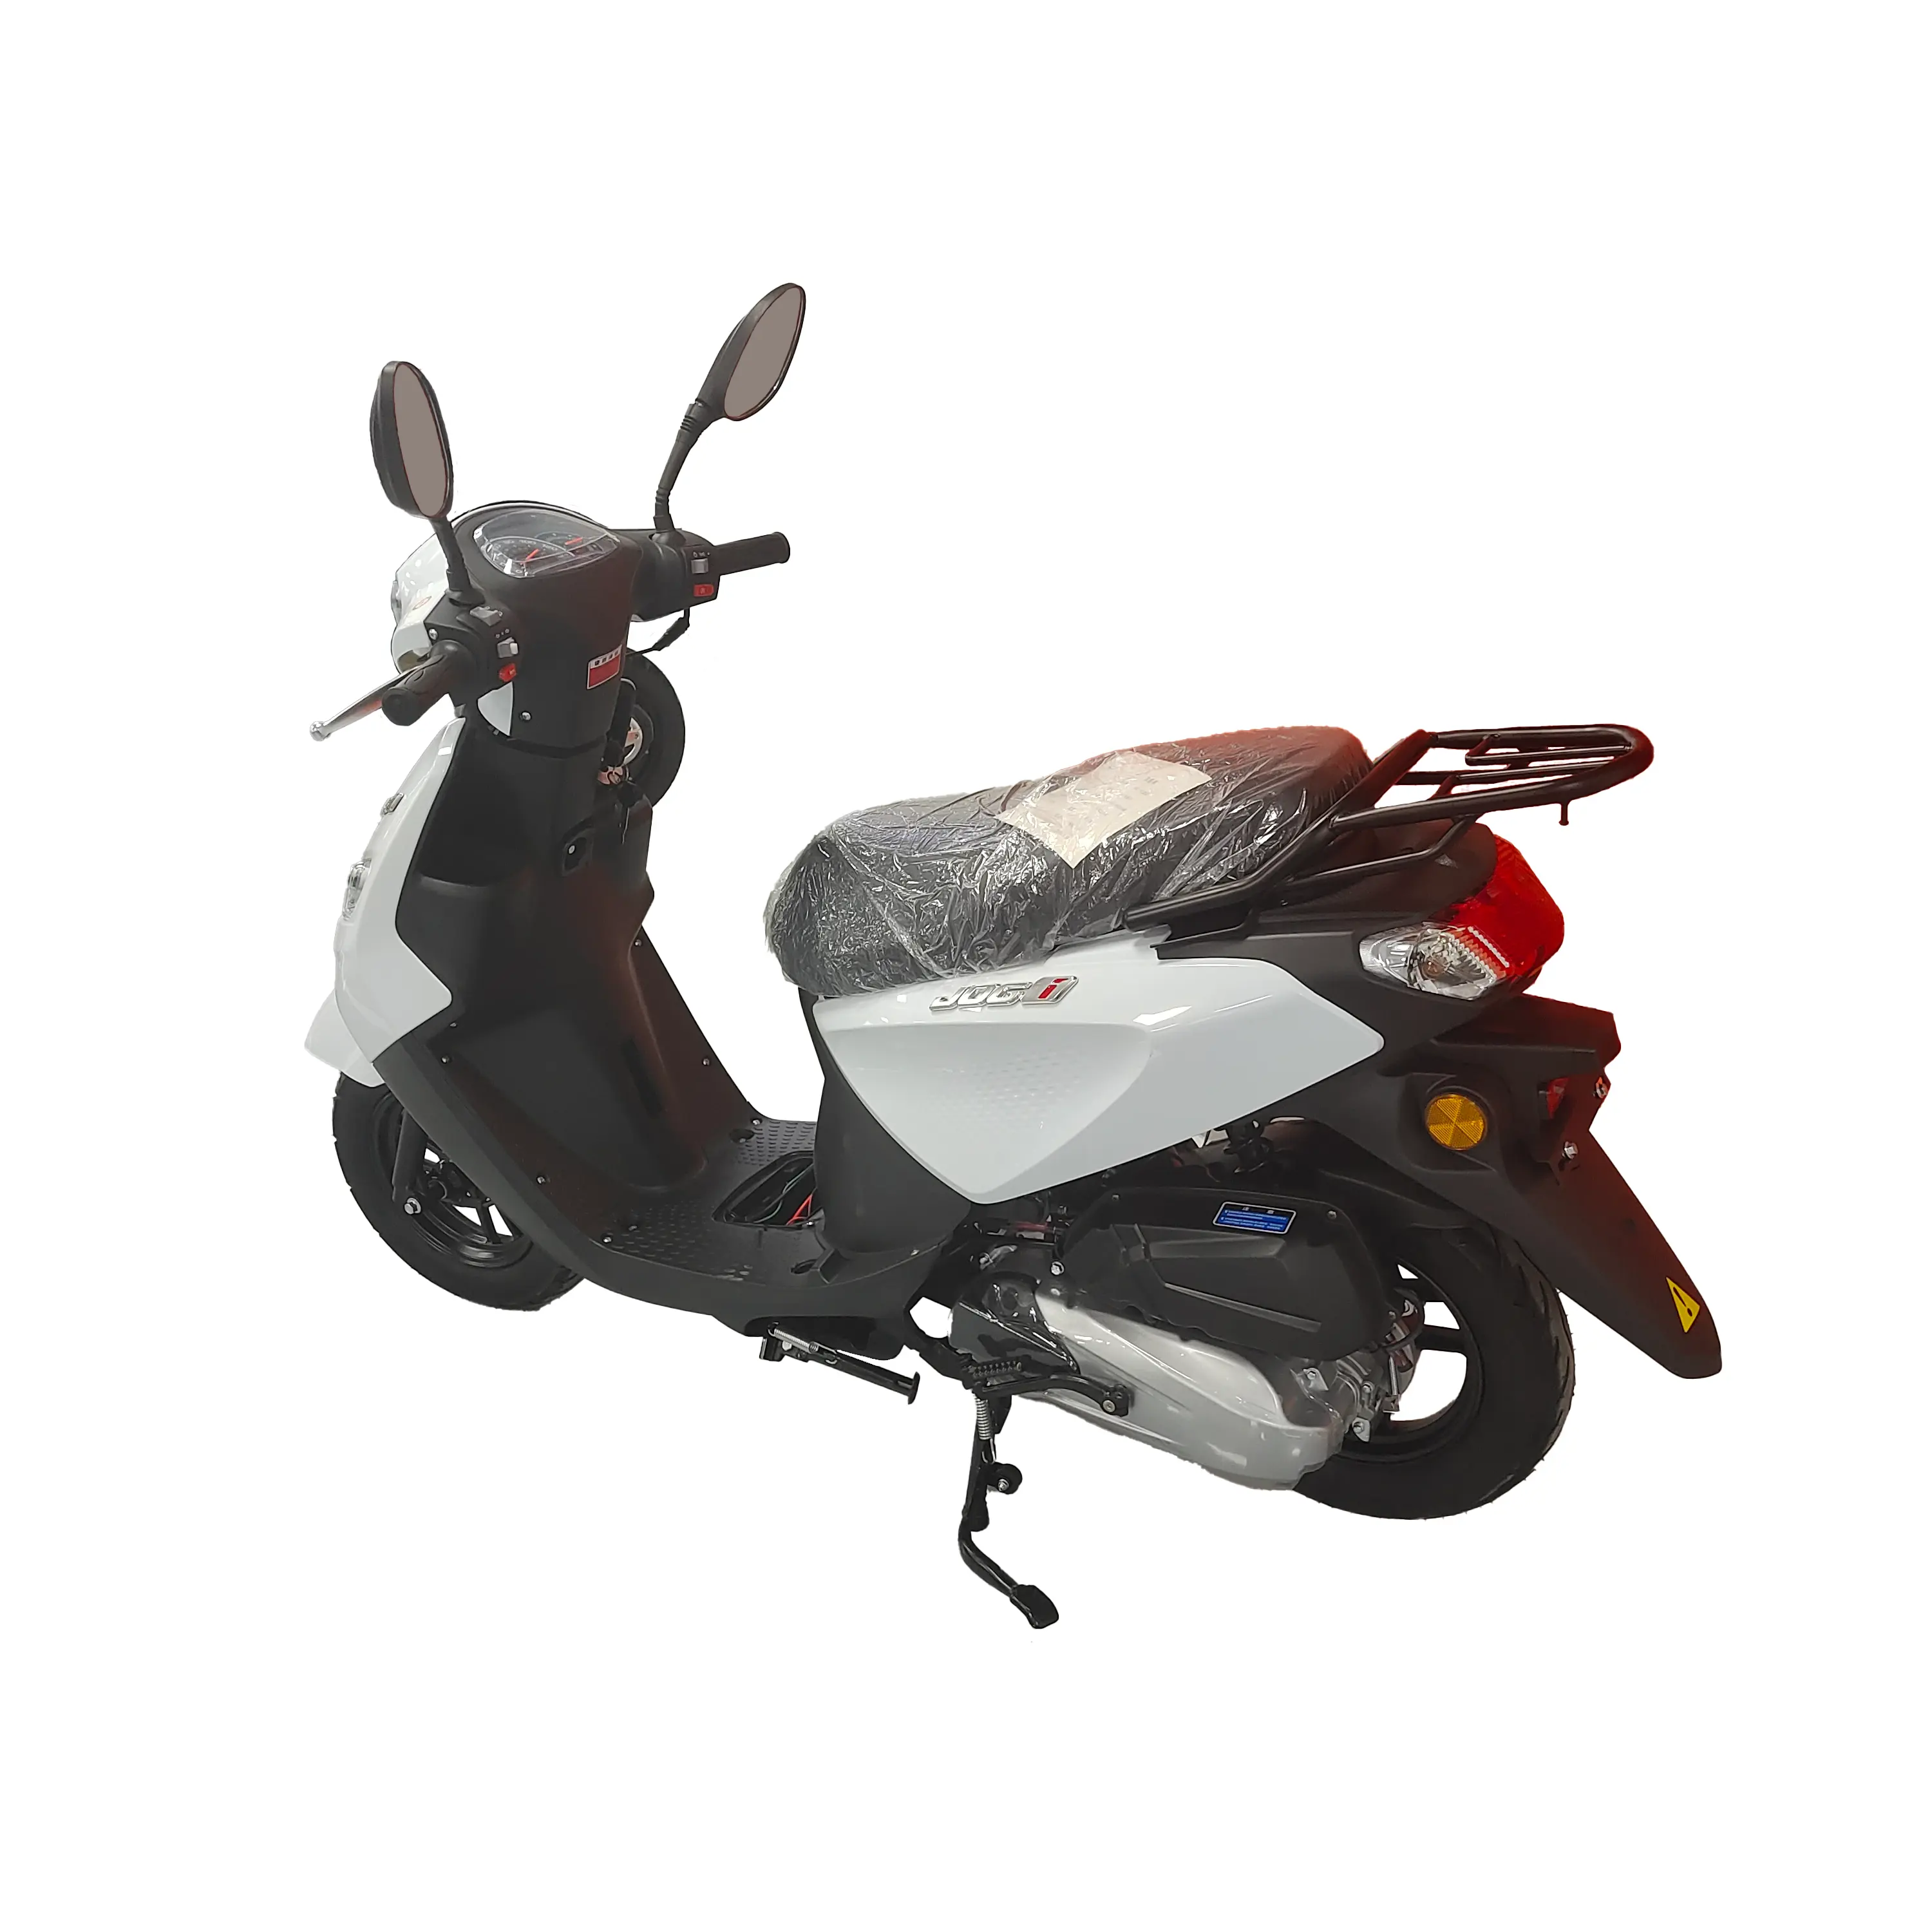 Moto di strada 300cc più nuovo raffreddamento ad acqua benzina moto motore di potenza per adulti fornitore di moto all'ingrosso